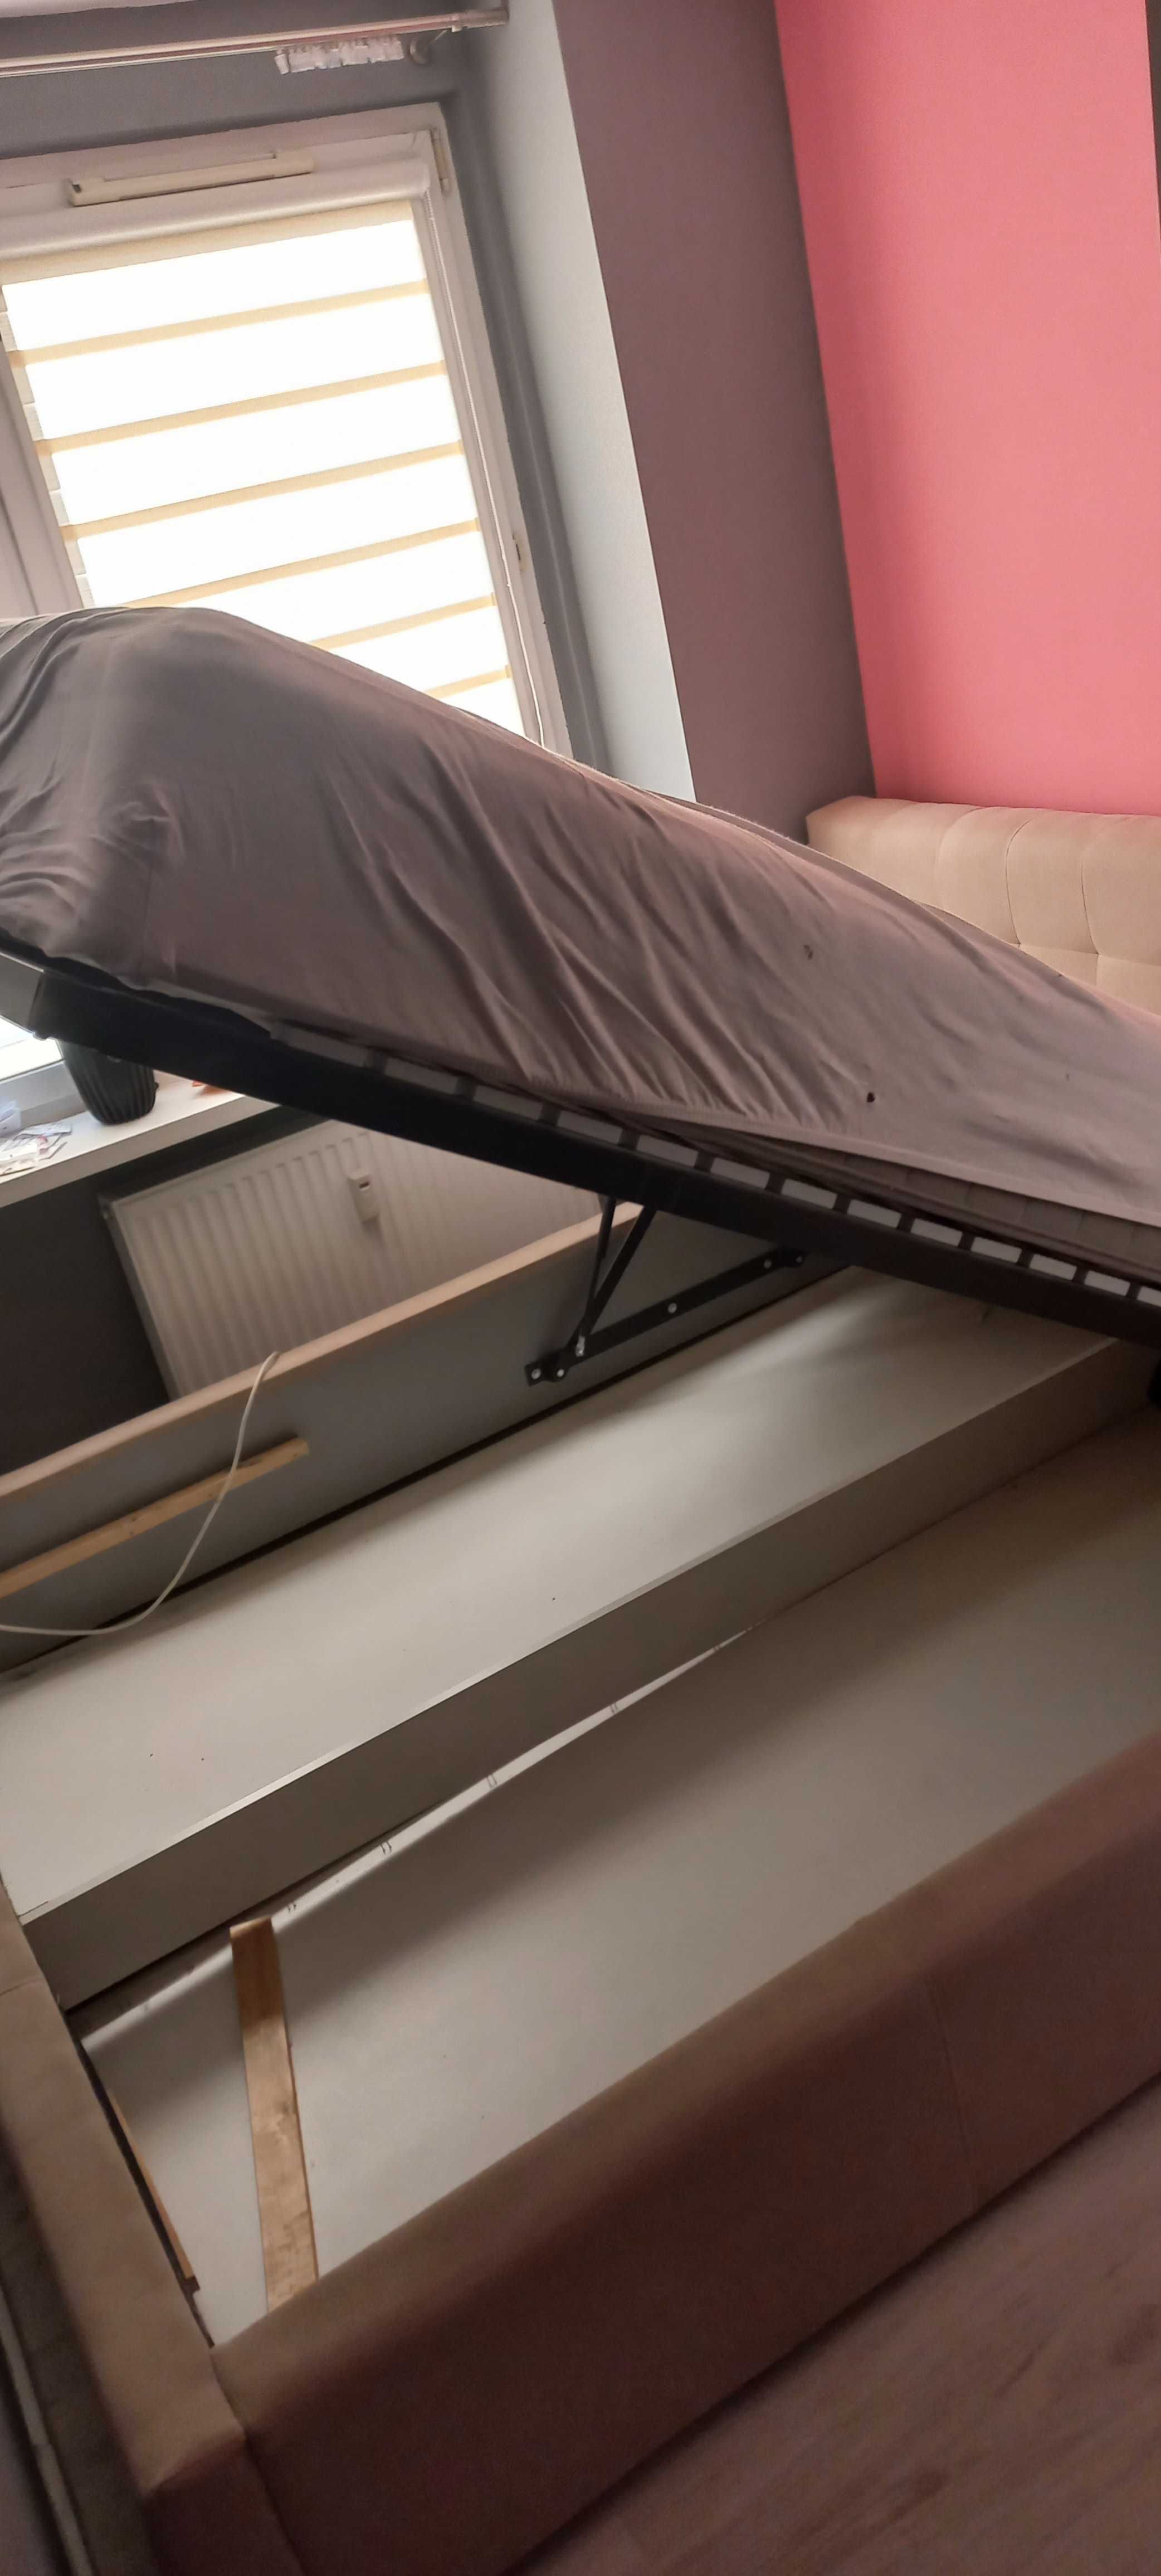 łóżko z materacem